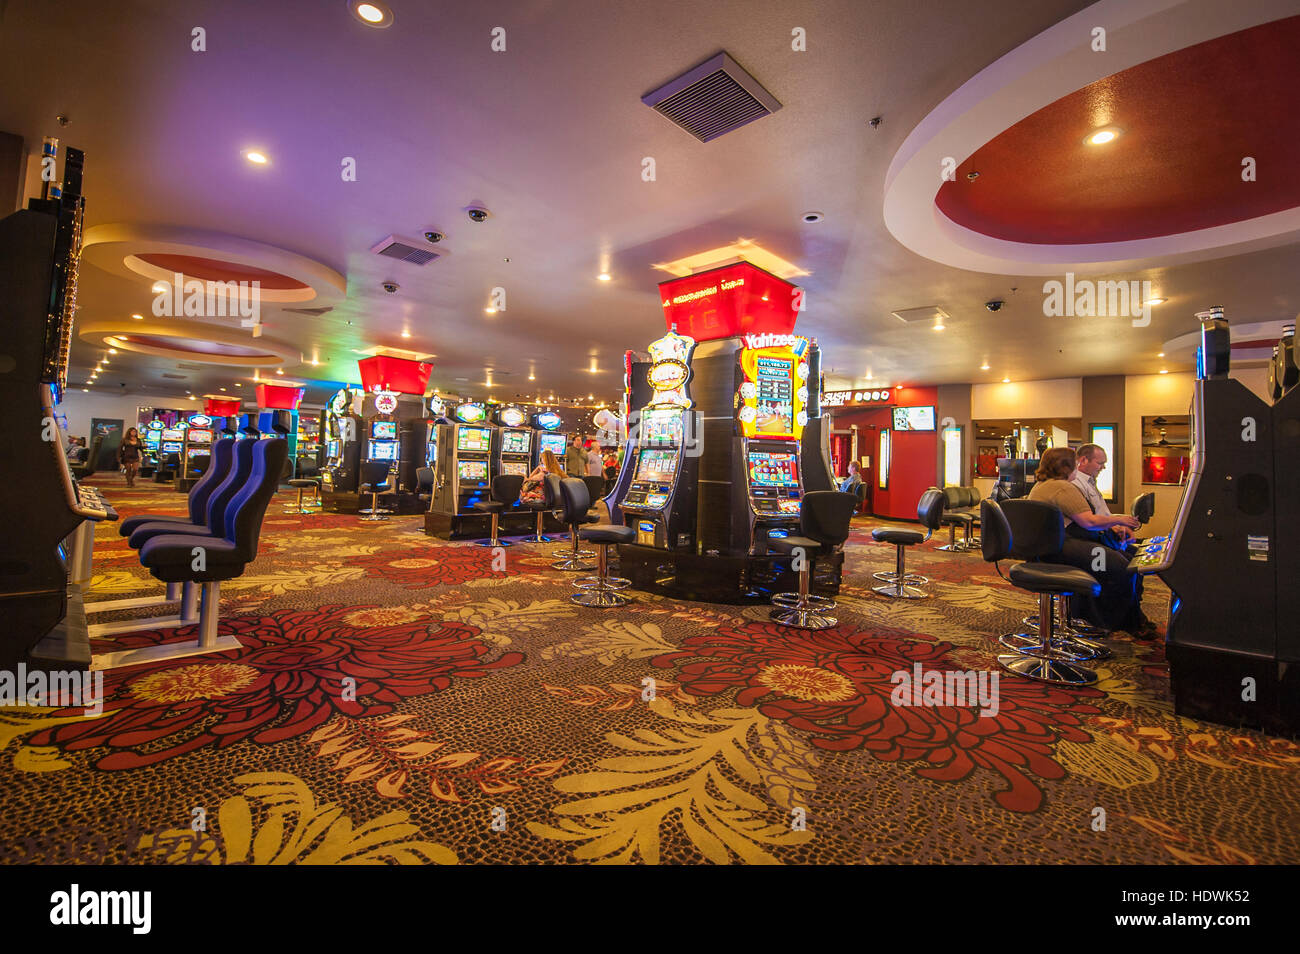 El Plaza Hotel & Casino de Las Vegas, Nevada Fotografía de Alamy